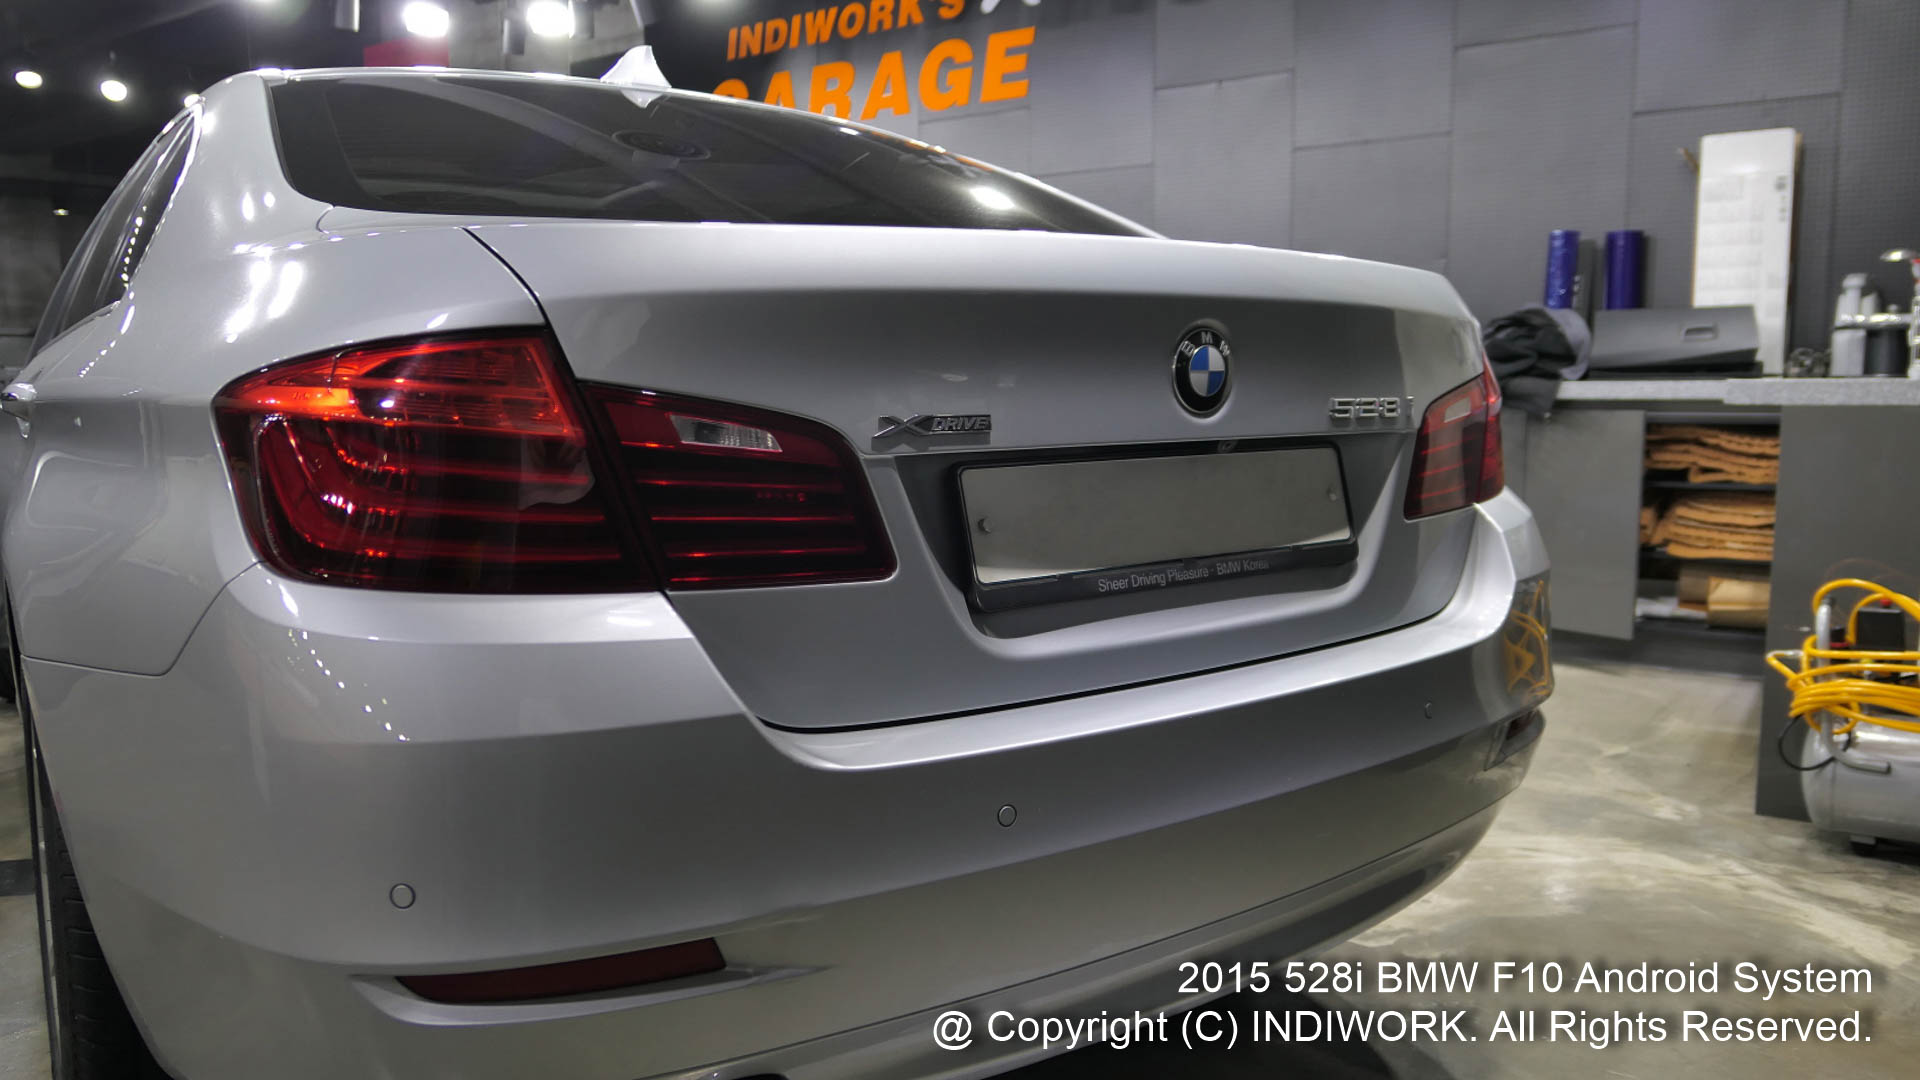 2015 BMW F10 520D 528i exterior